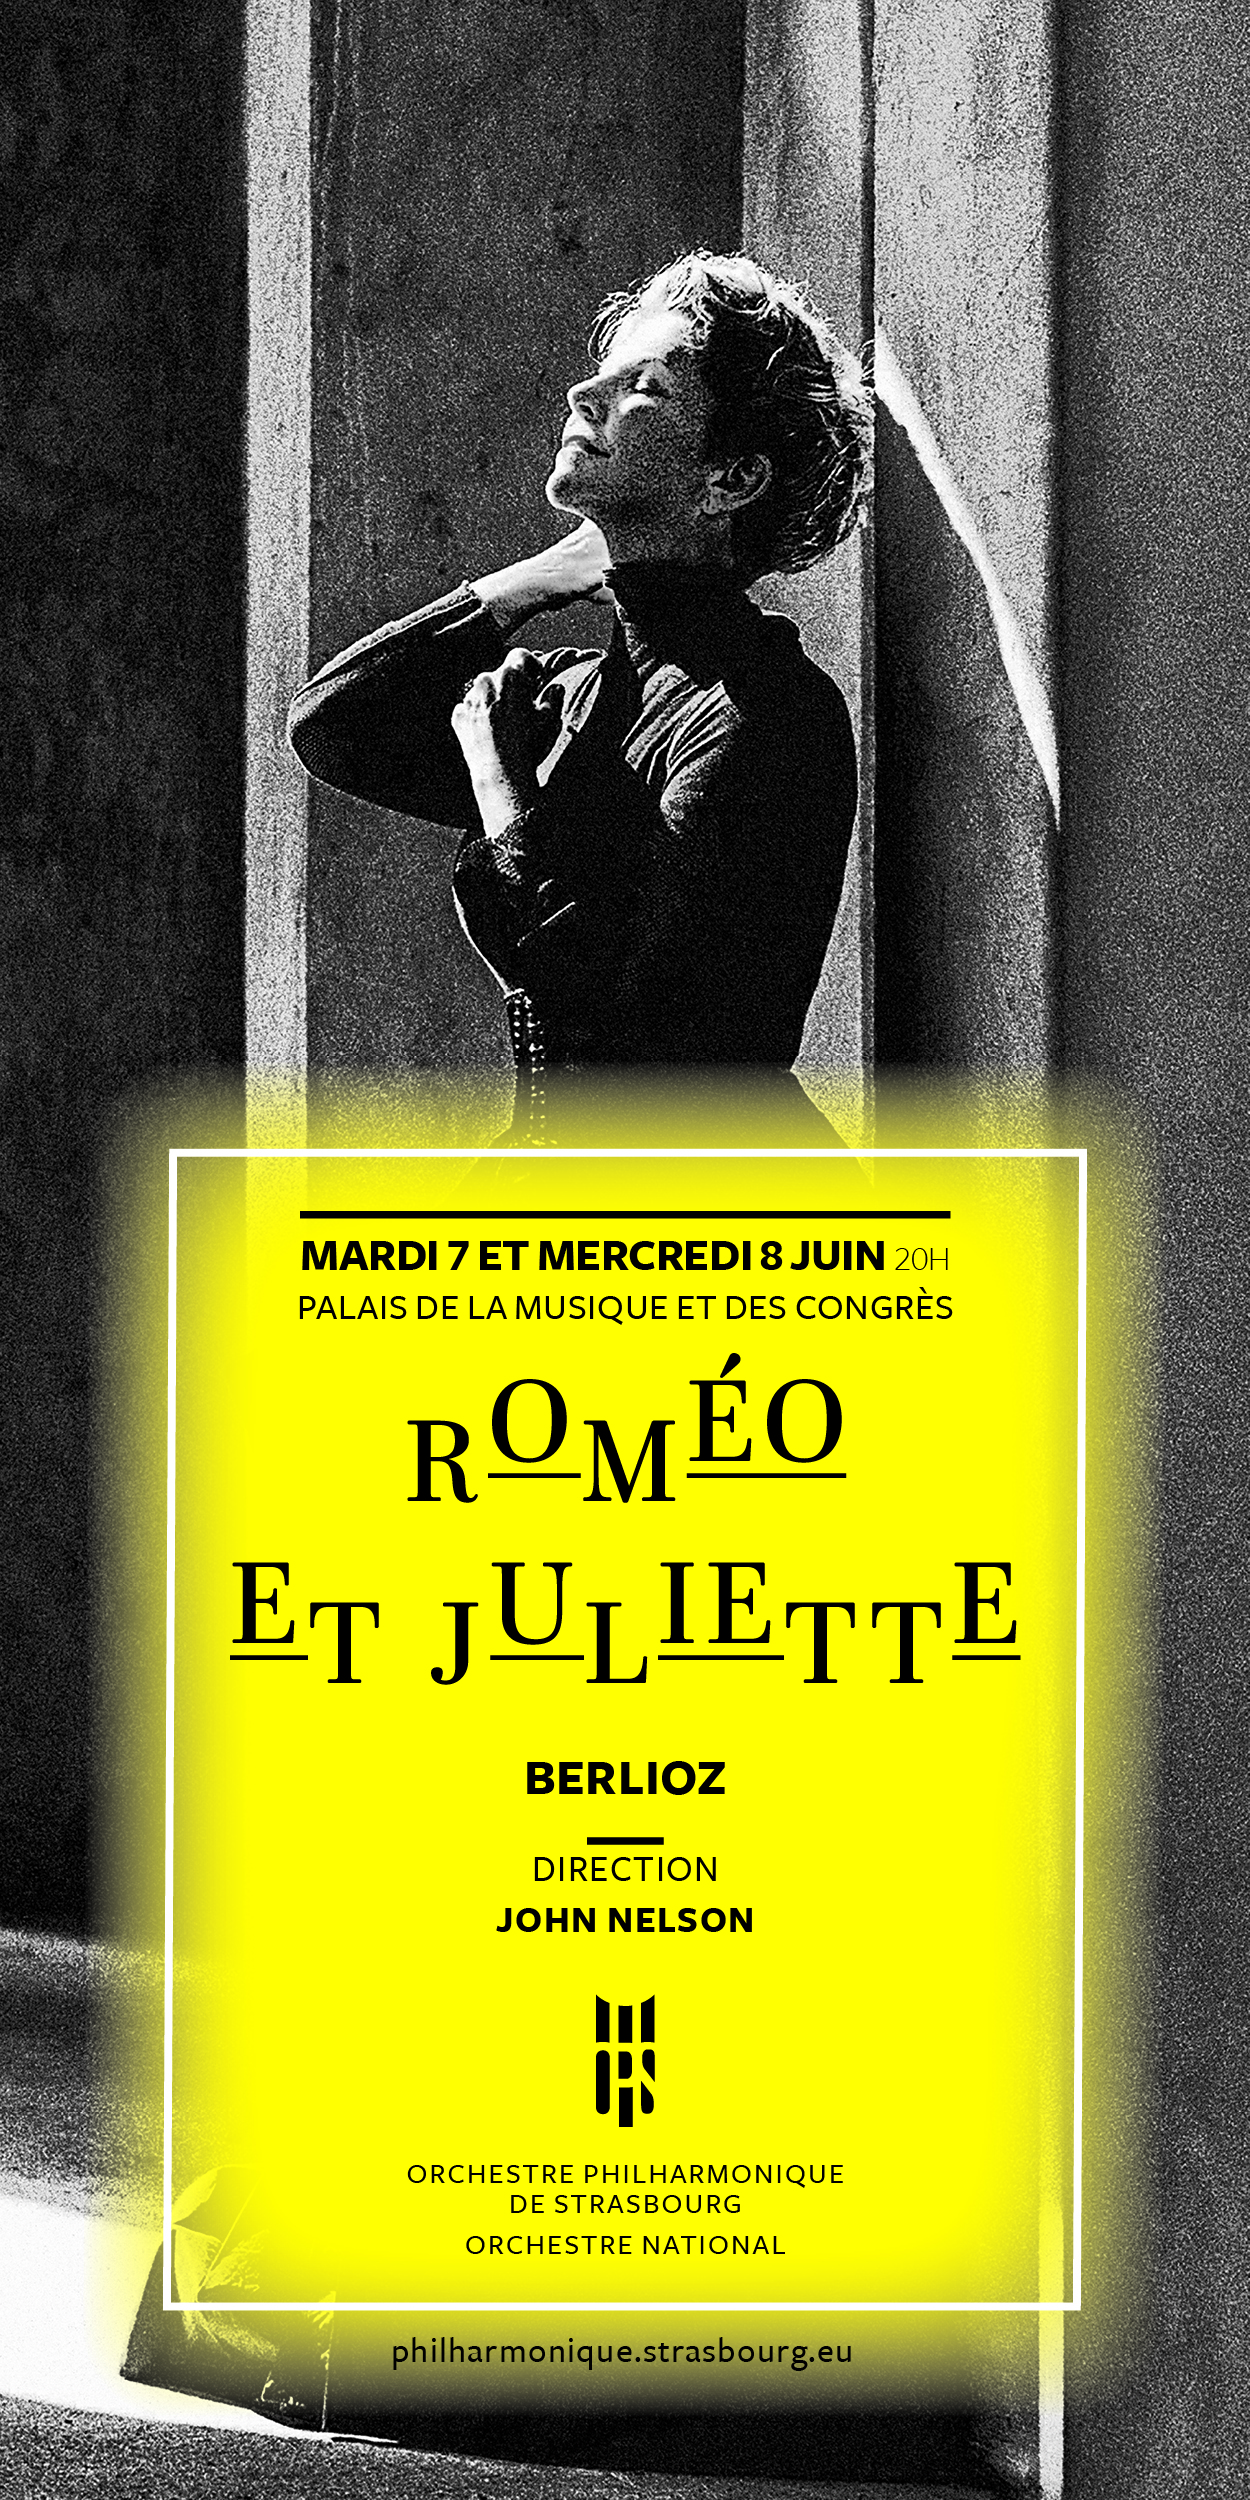 Roméo et Juliette - Orchestre Philharmonique de Strasbourg | szenik.eu